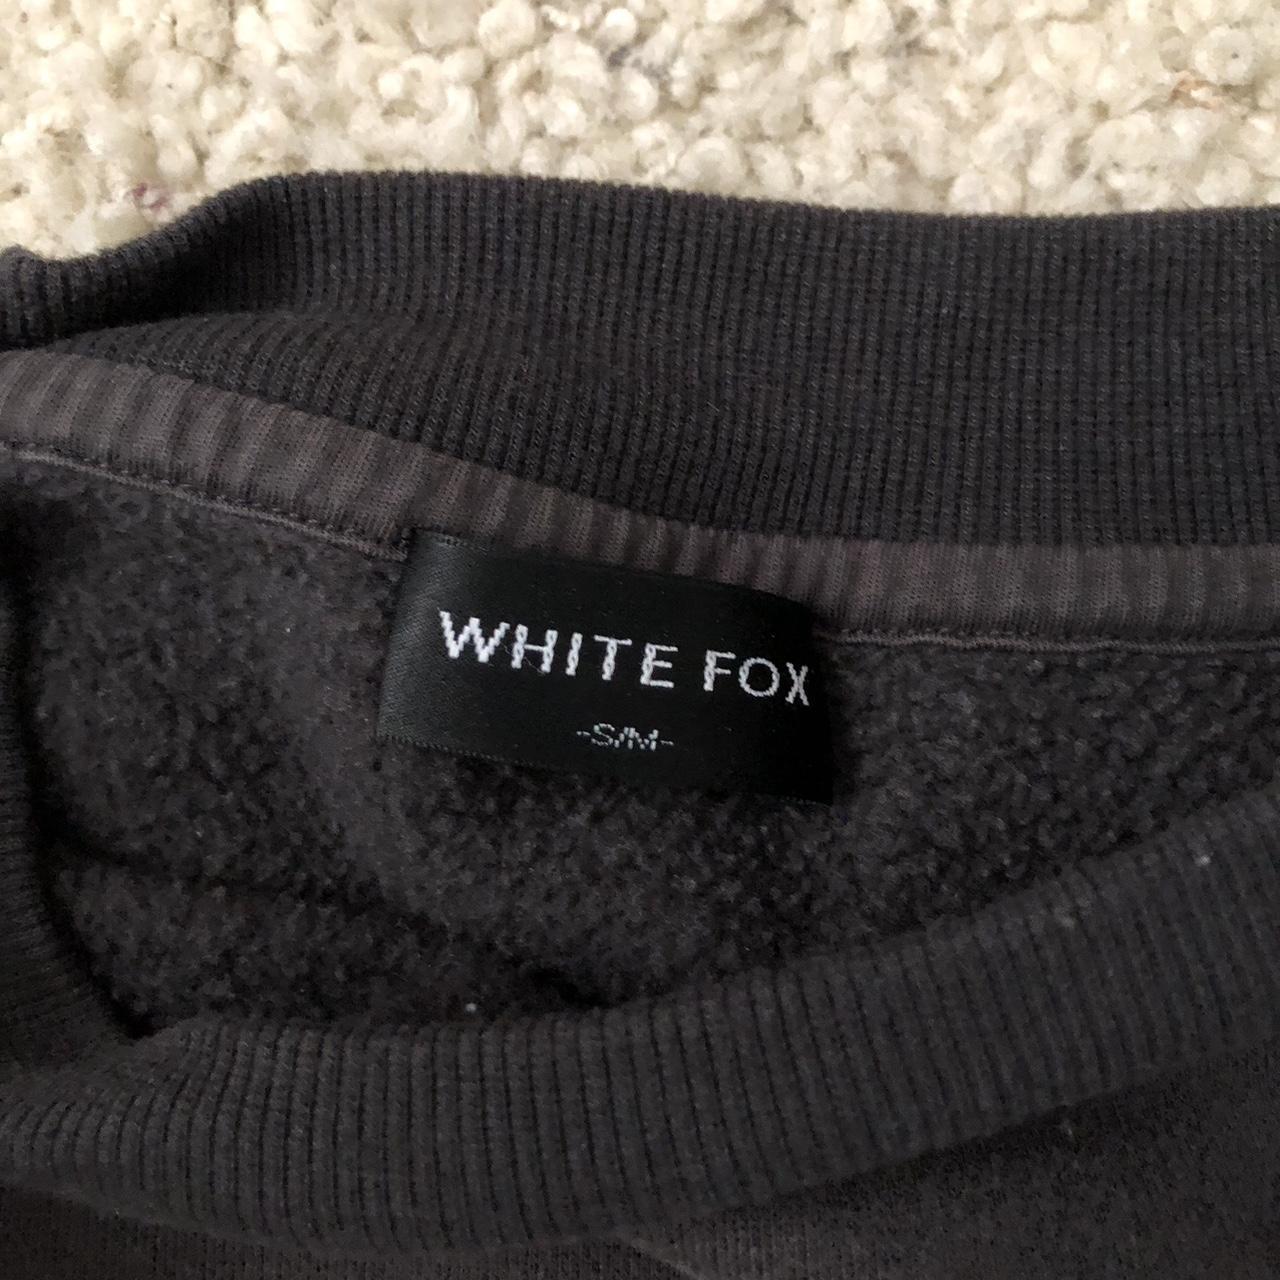 White Fox Sweatshirt in S/M #whitefox - Depop